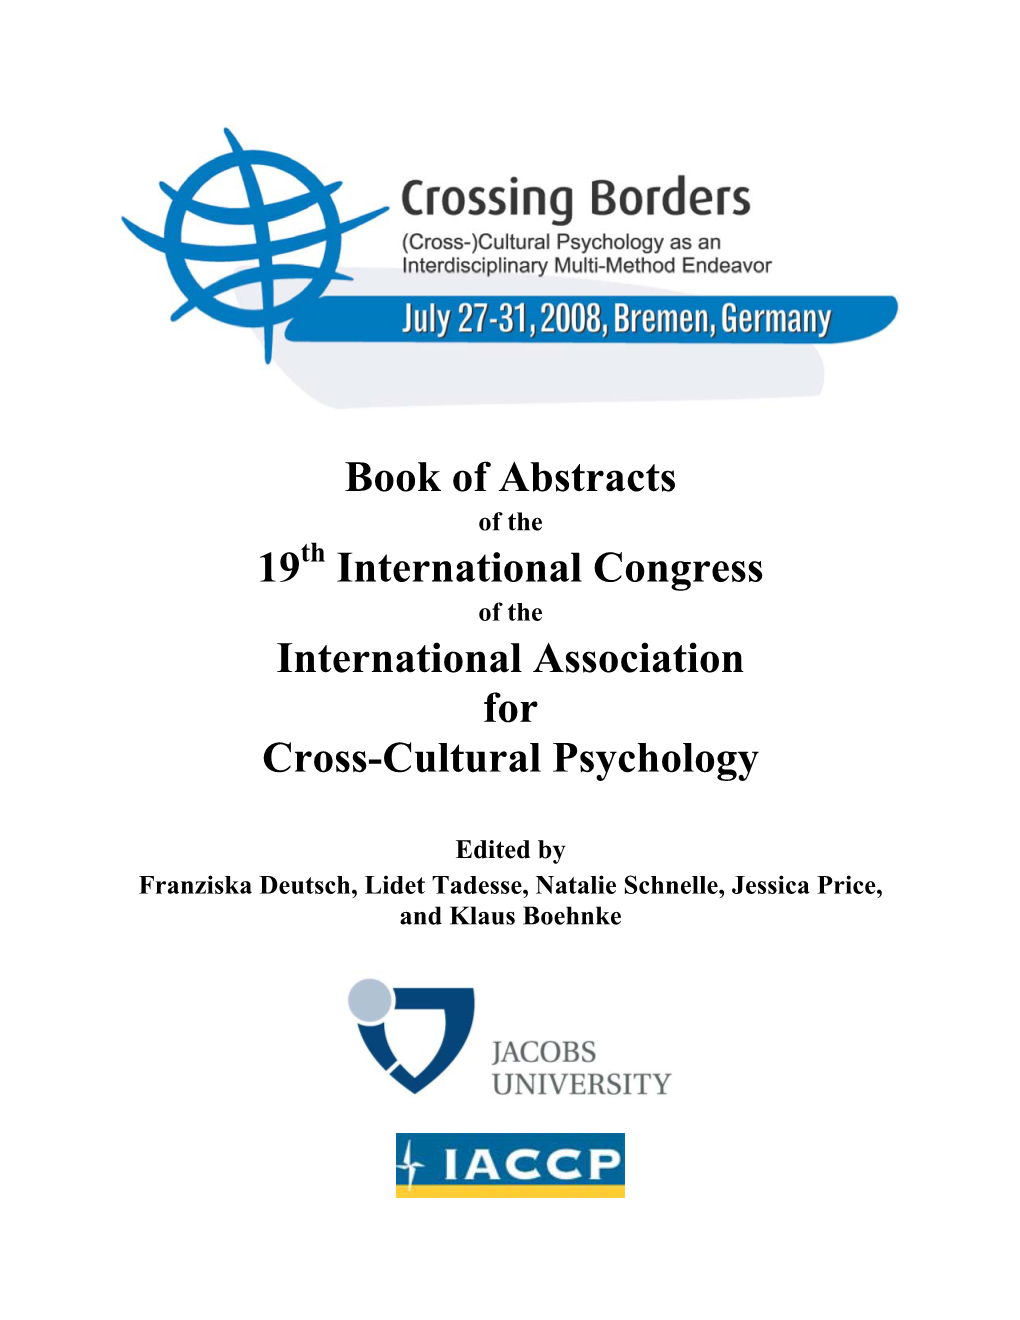 Book of Abstracts 19 International Congress International Association